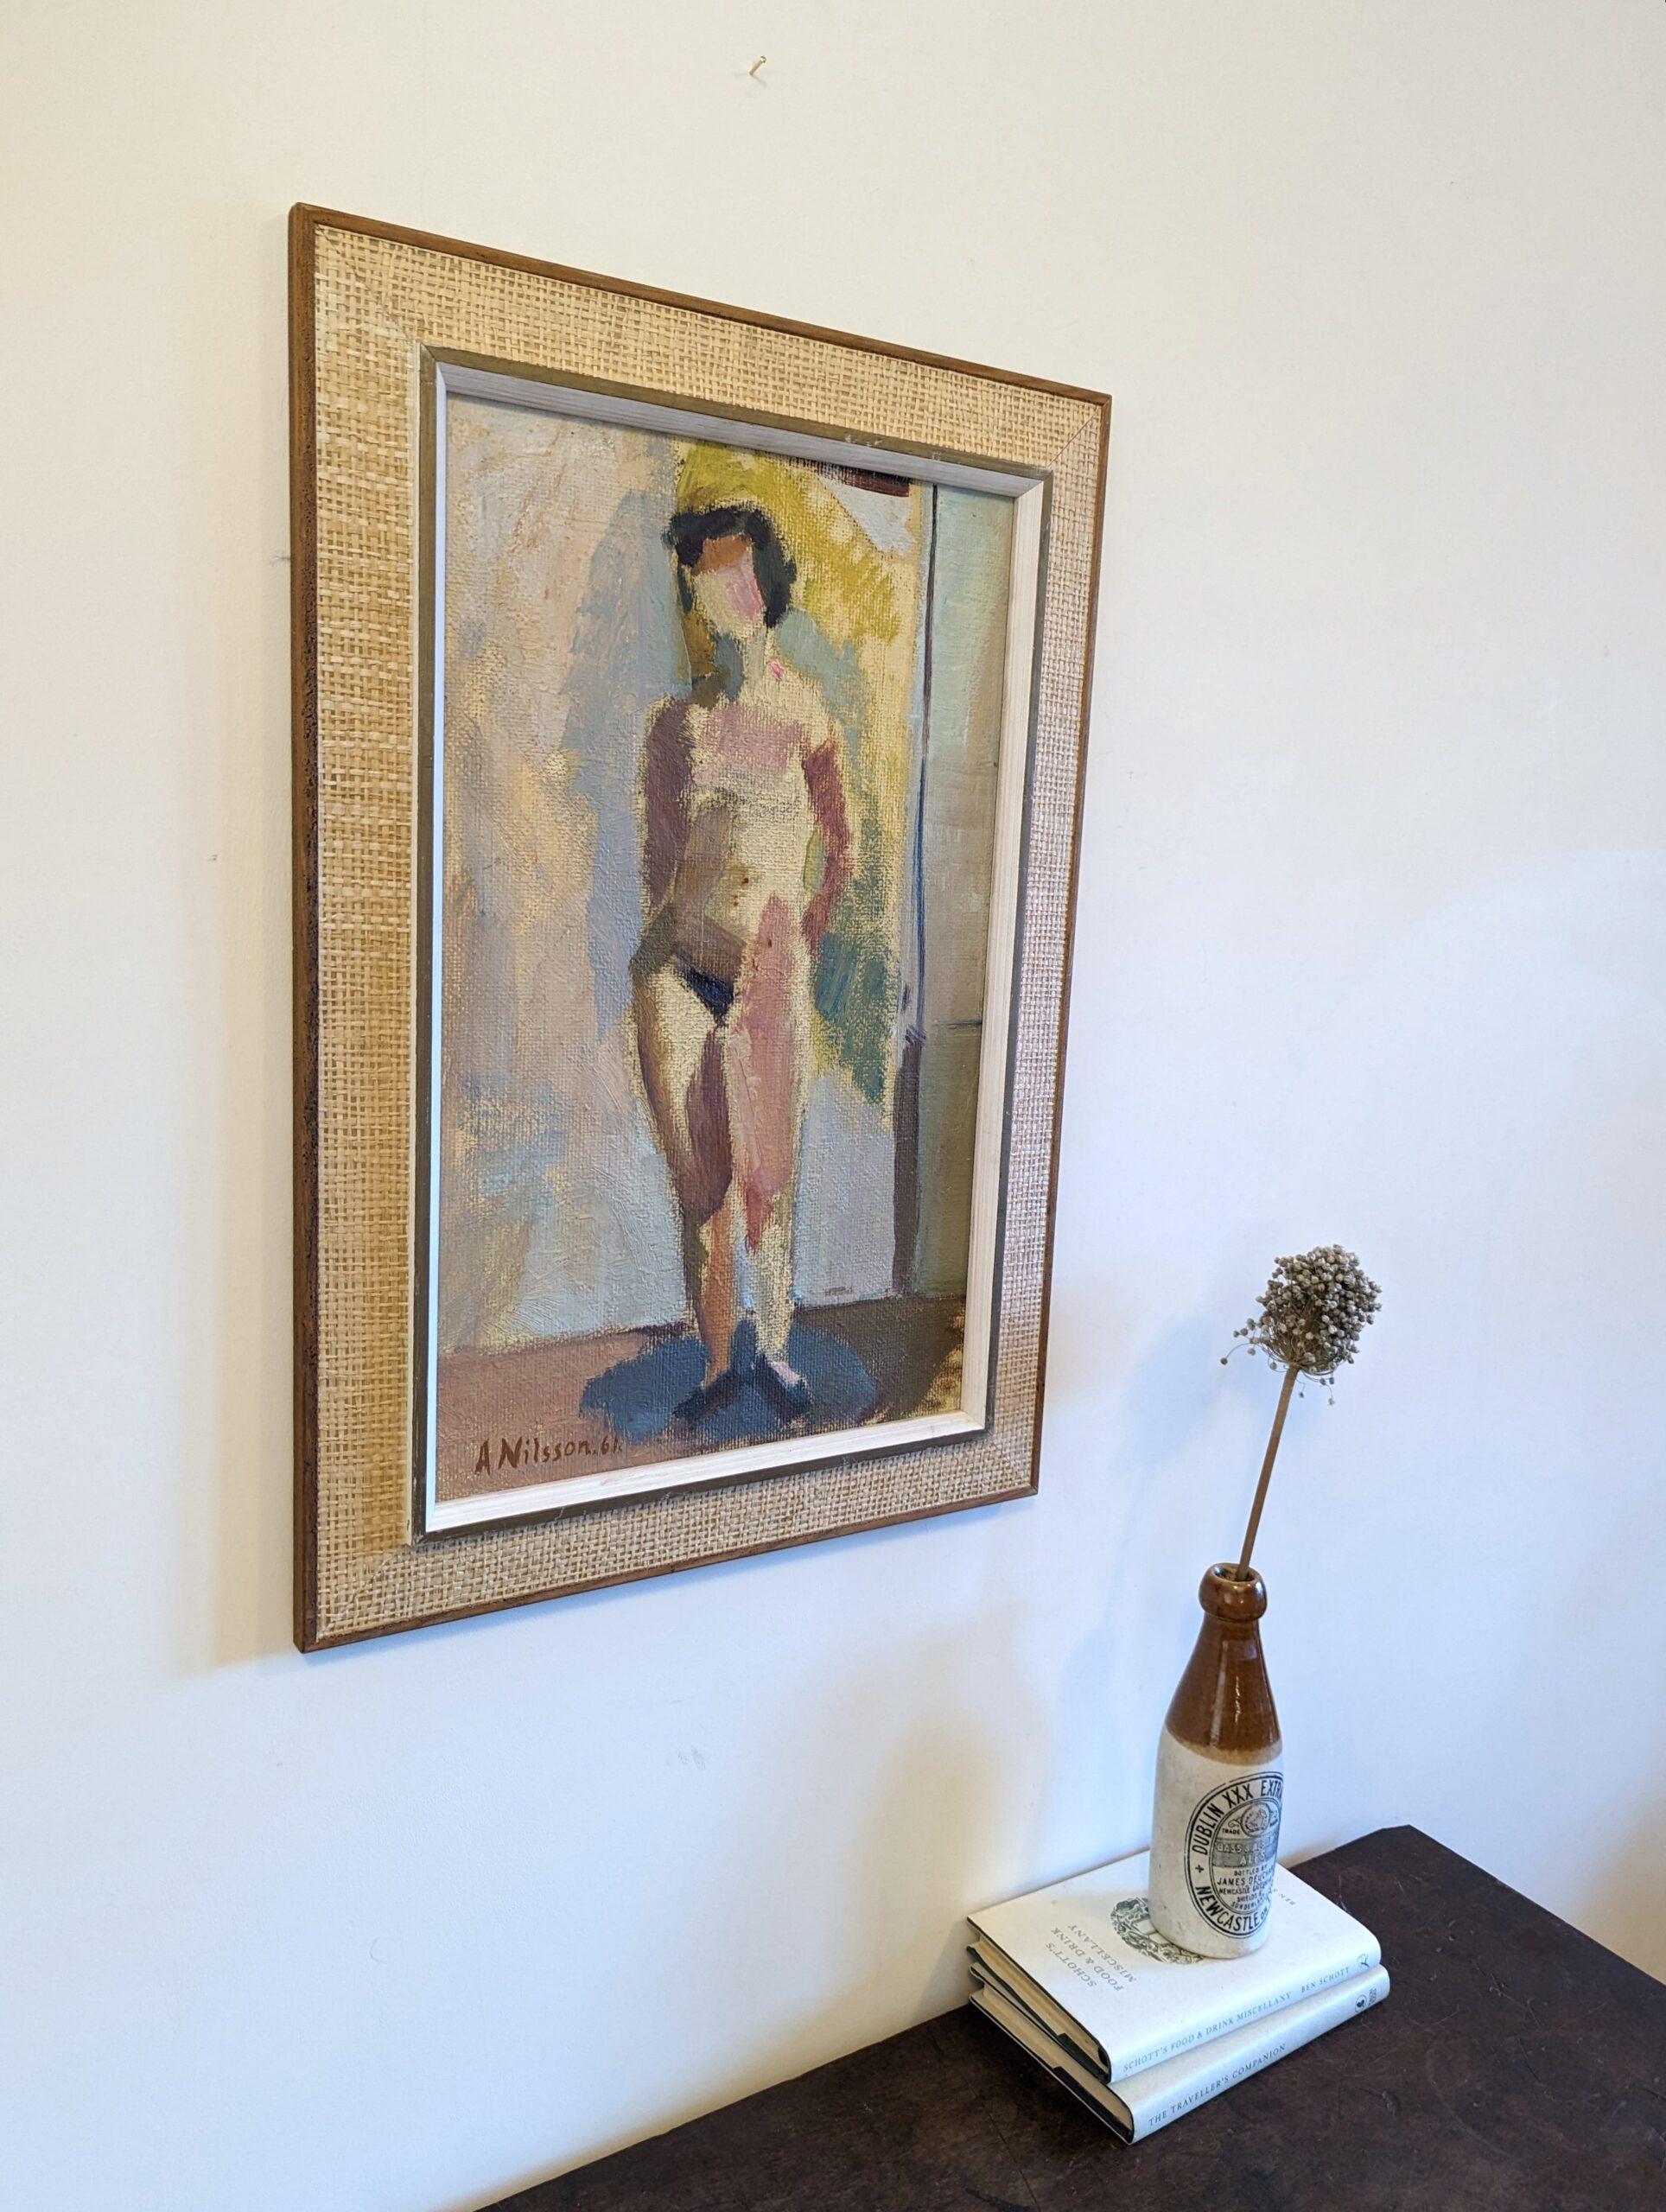 HELENE
Größe: 55,5 x 38,5 cm (einschließlich Rahmen)
Öl auf Leinwand

Ein brillantes figuratives Gemälde im Stil der Moderne, das einen Akt darstellt, in Öl gemalt und 1961 datiert.

Die Komposition fängt einen stehenden Akt in einer